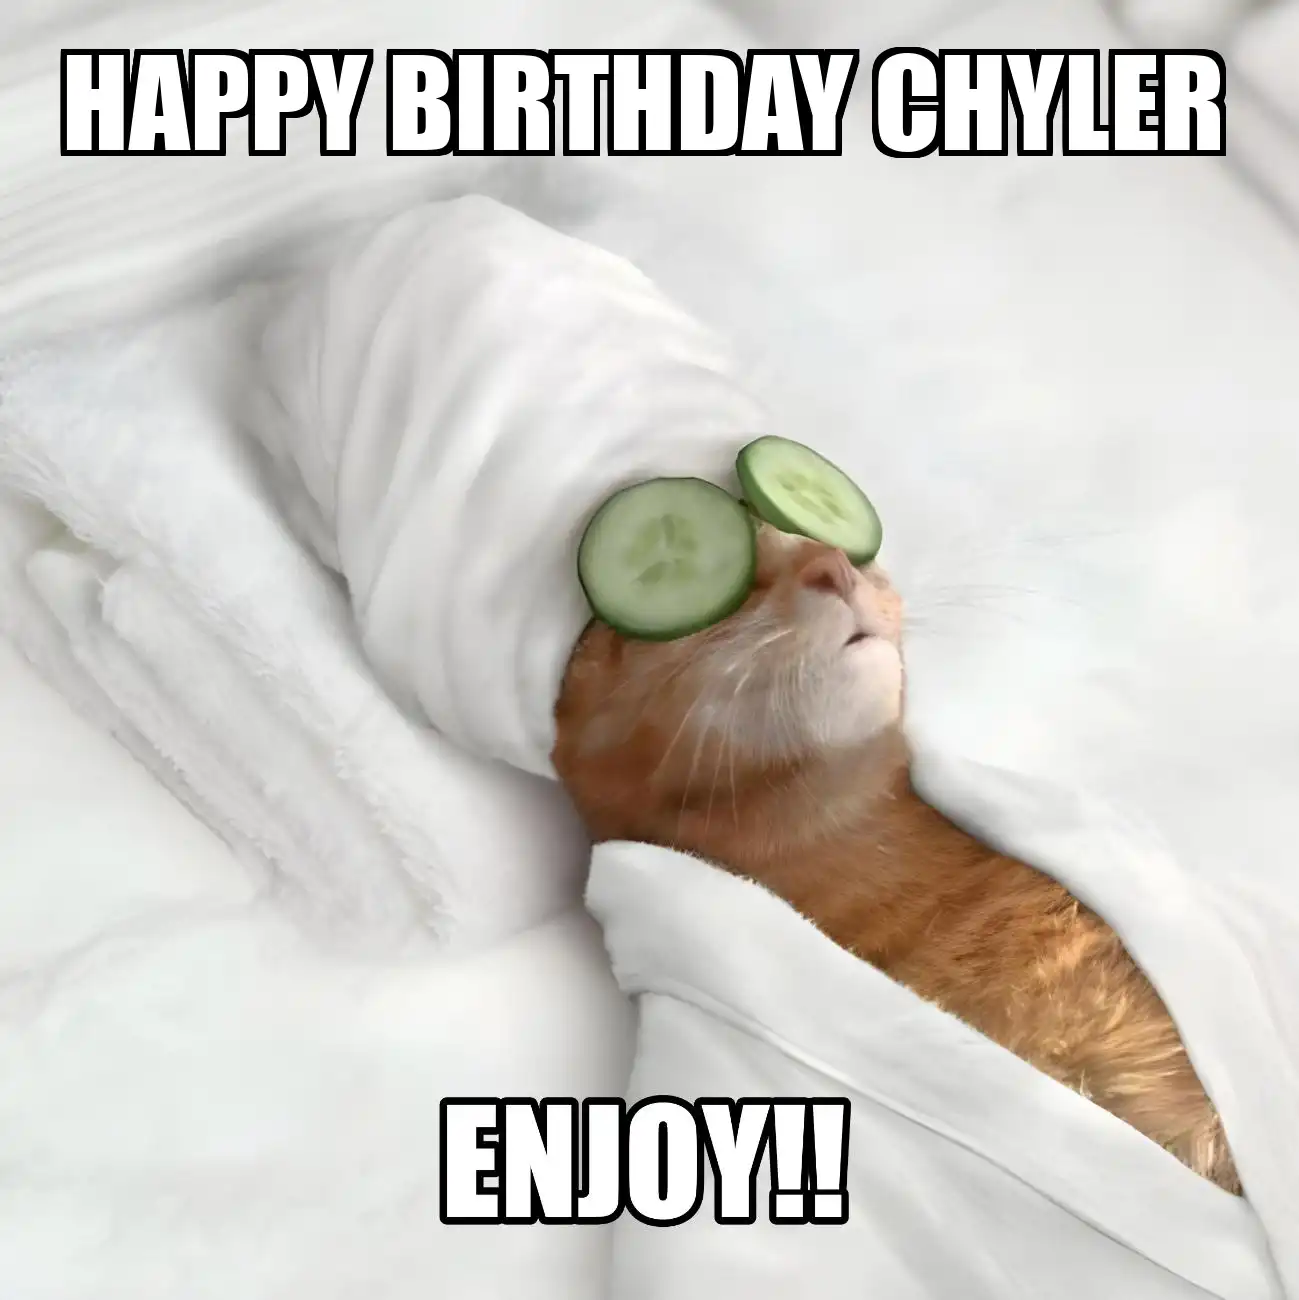 Happy Birthday Chyler Enjoy Cat Meme